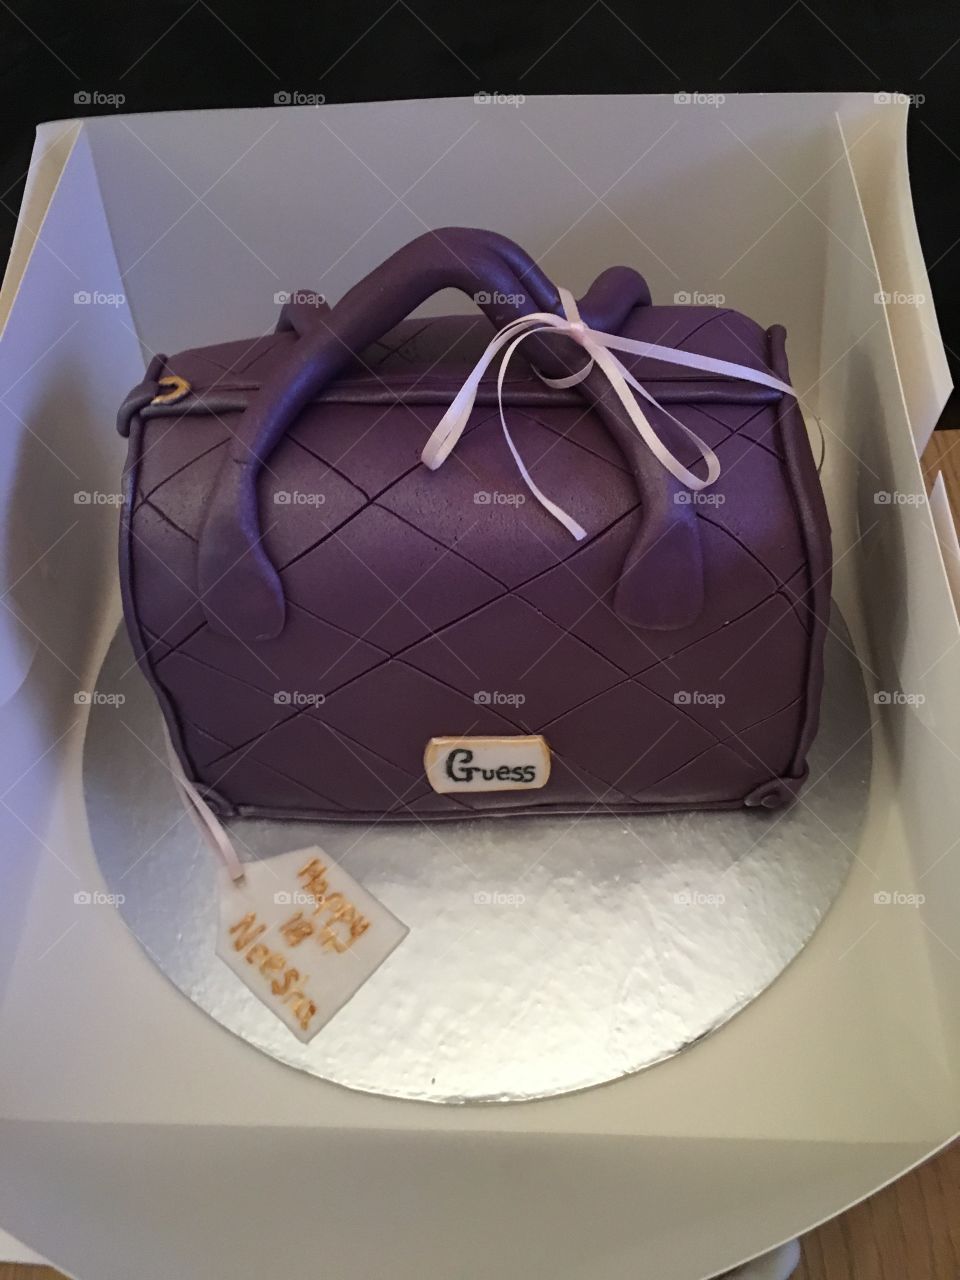 Cake making -designer bag